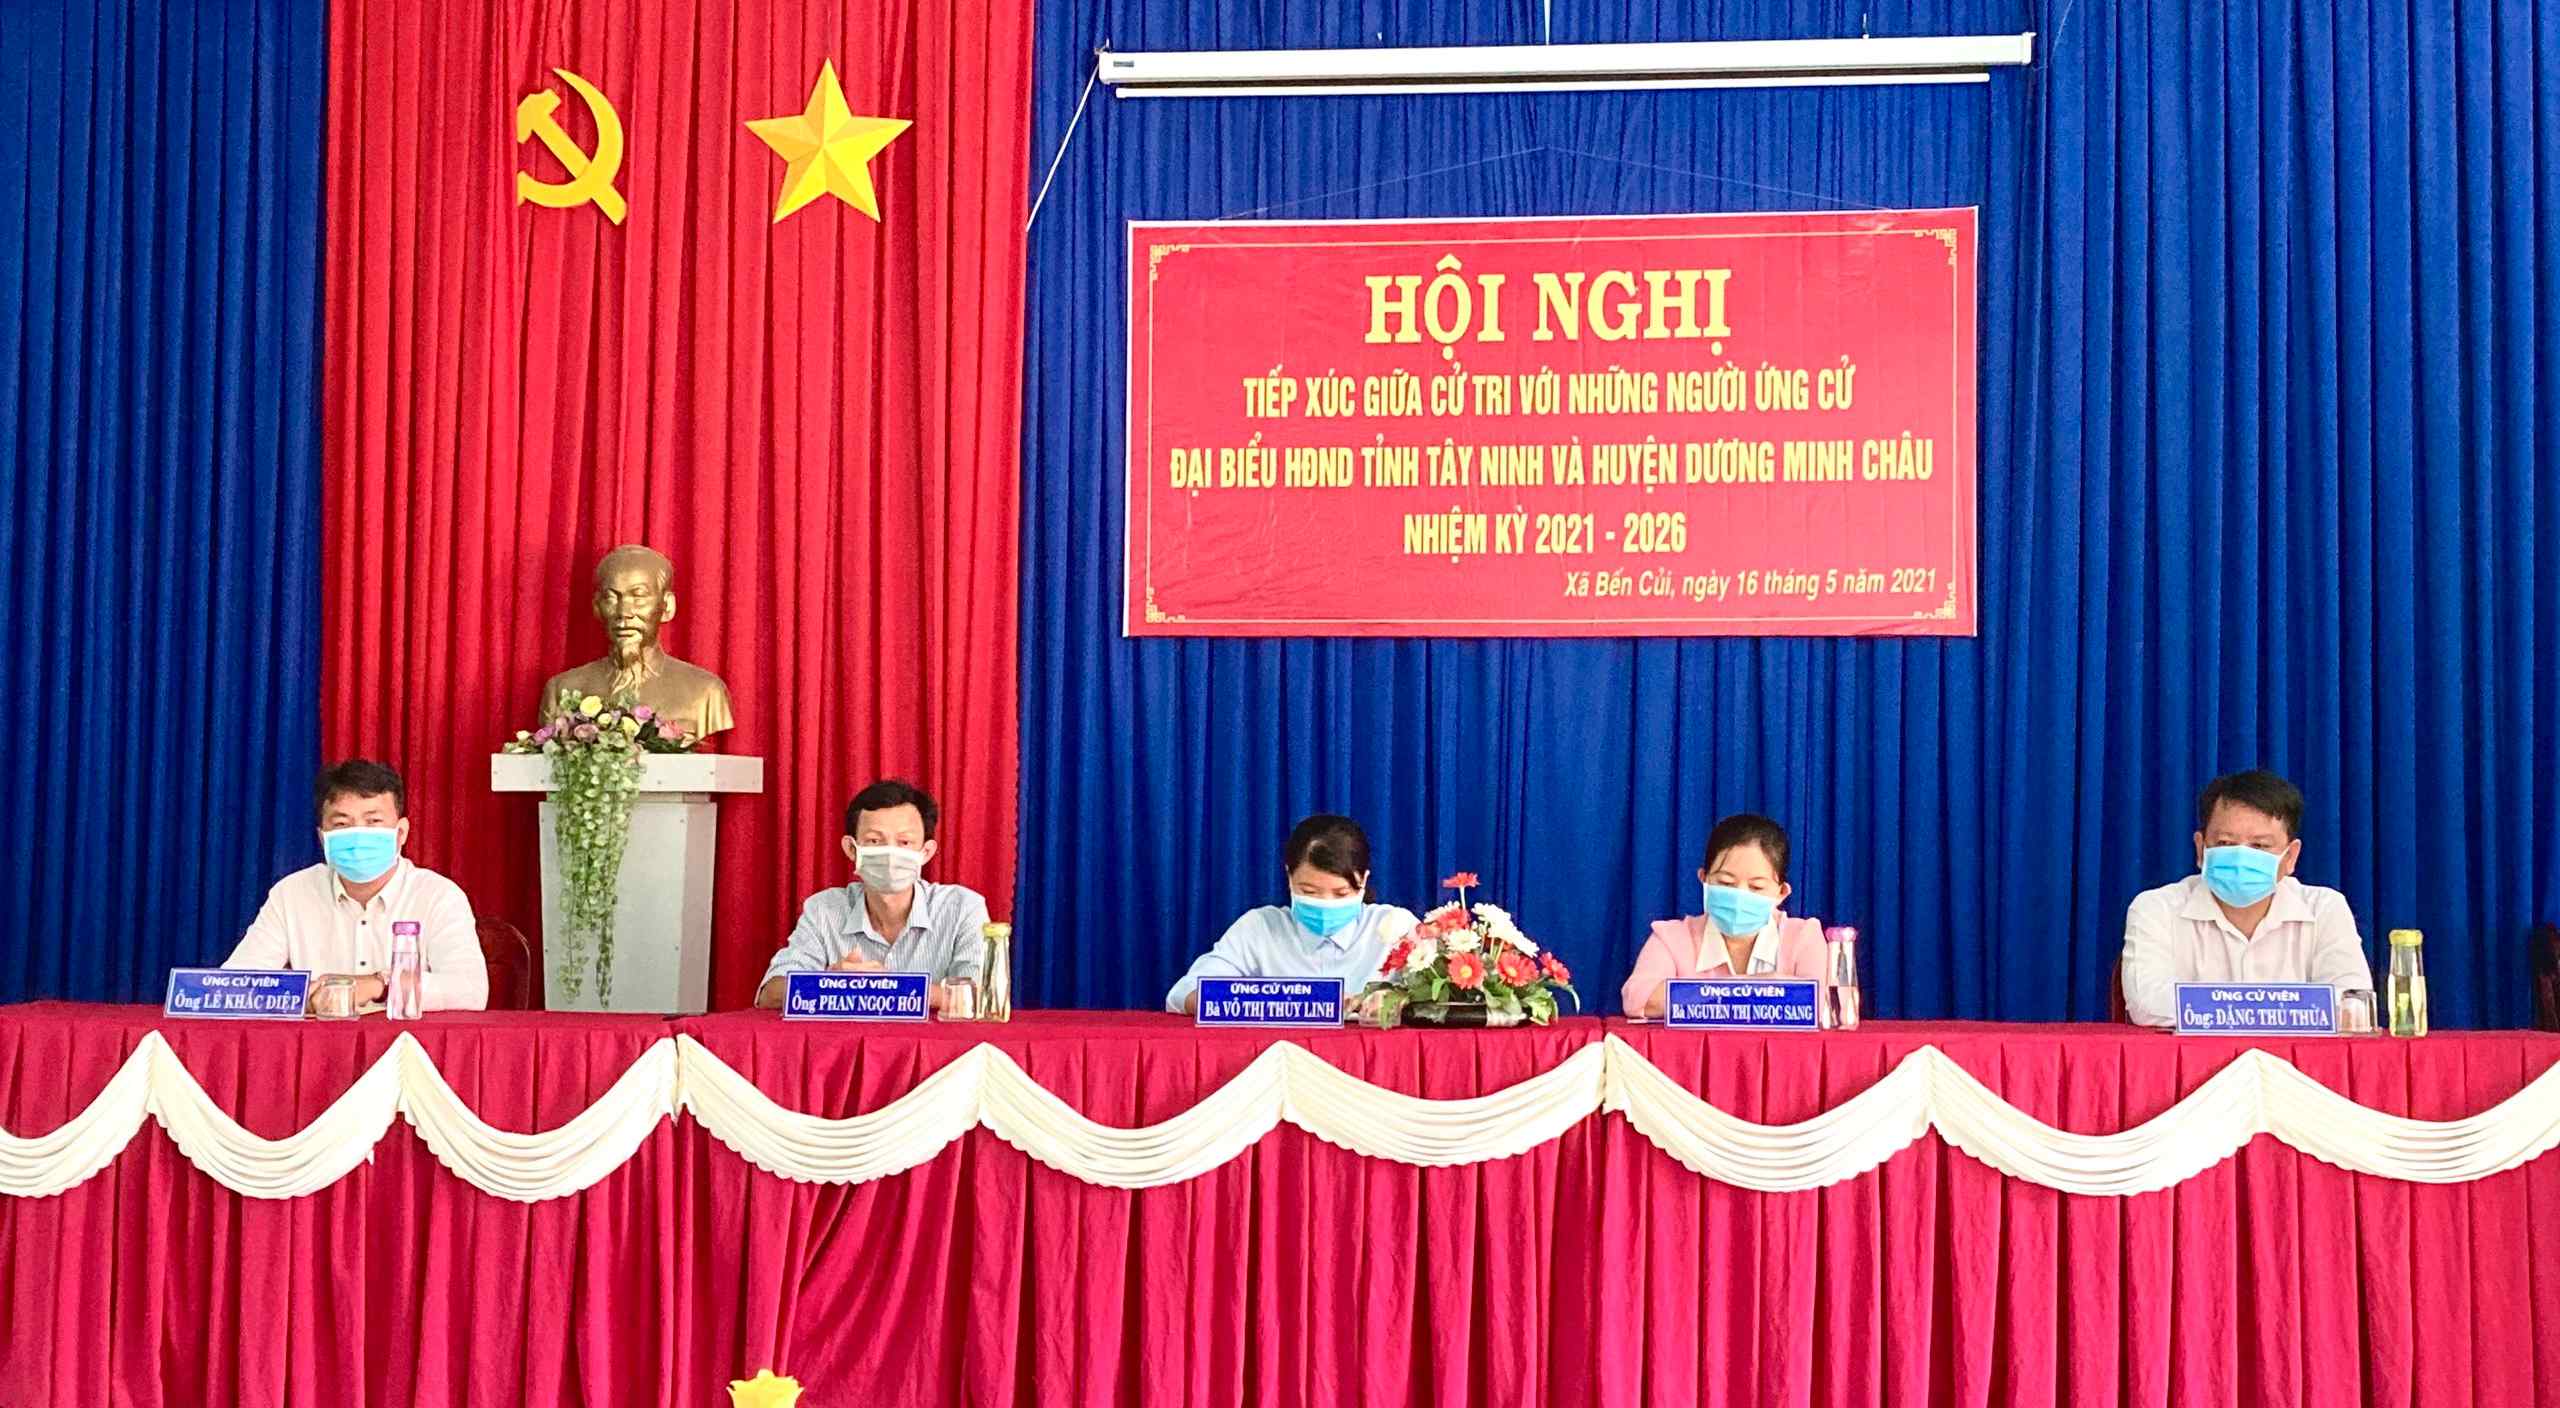 Huyện Dương Minh Châu: Ứng cử viên đại biểu HĐND tỉnh, huyện tiếp xúc cử tri xã Bến Củi, Phước Minh